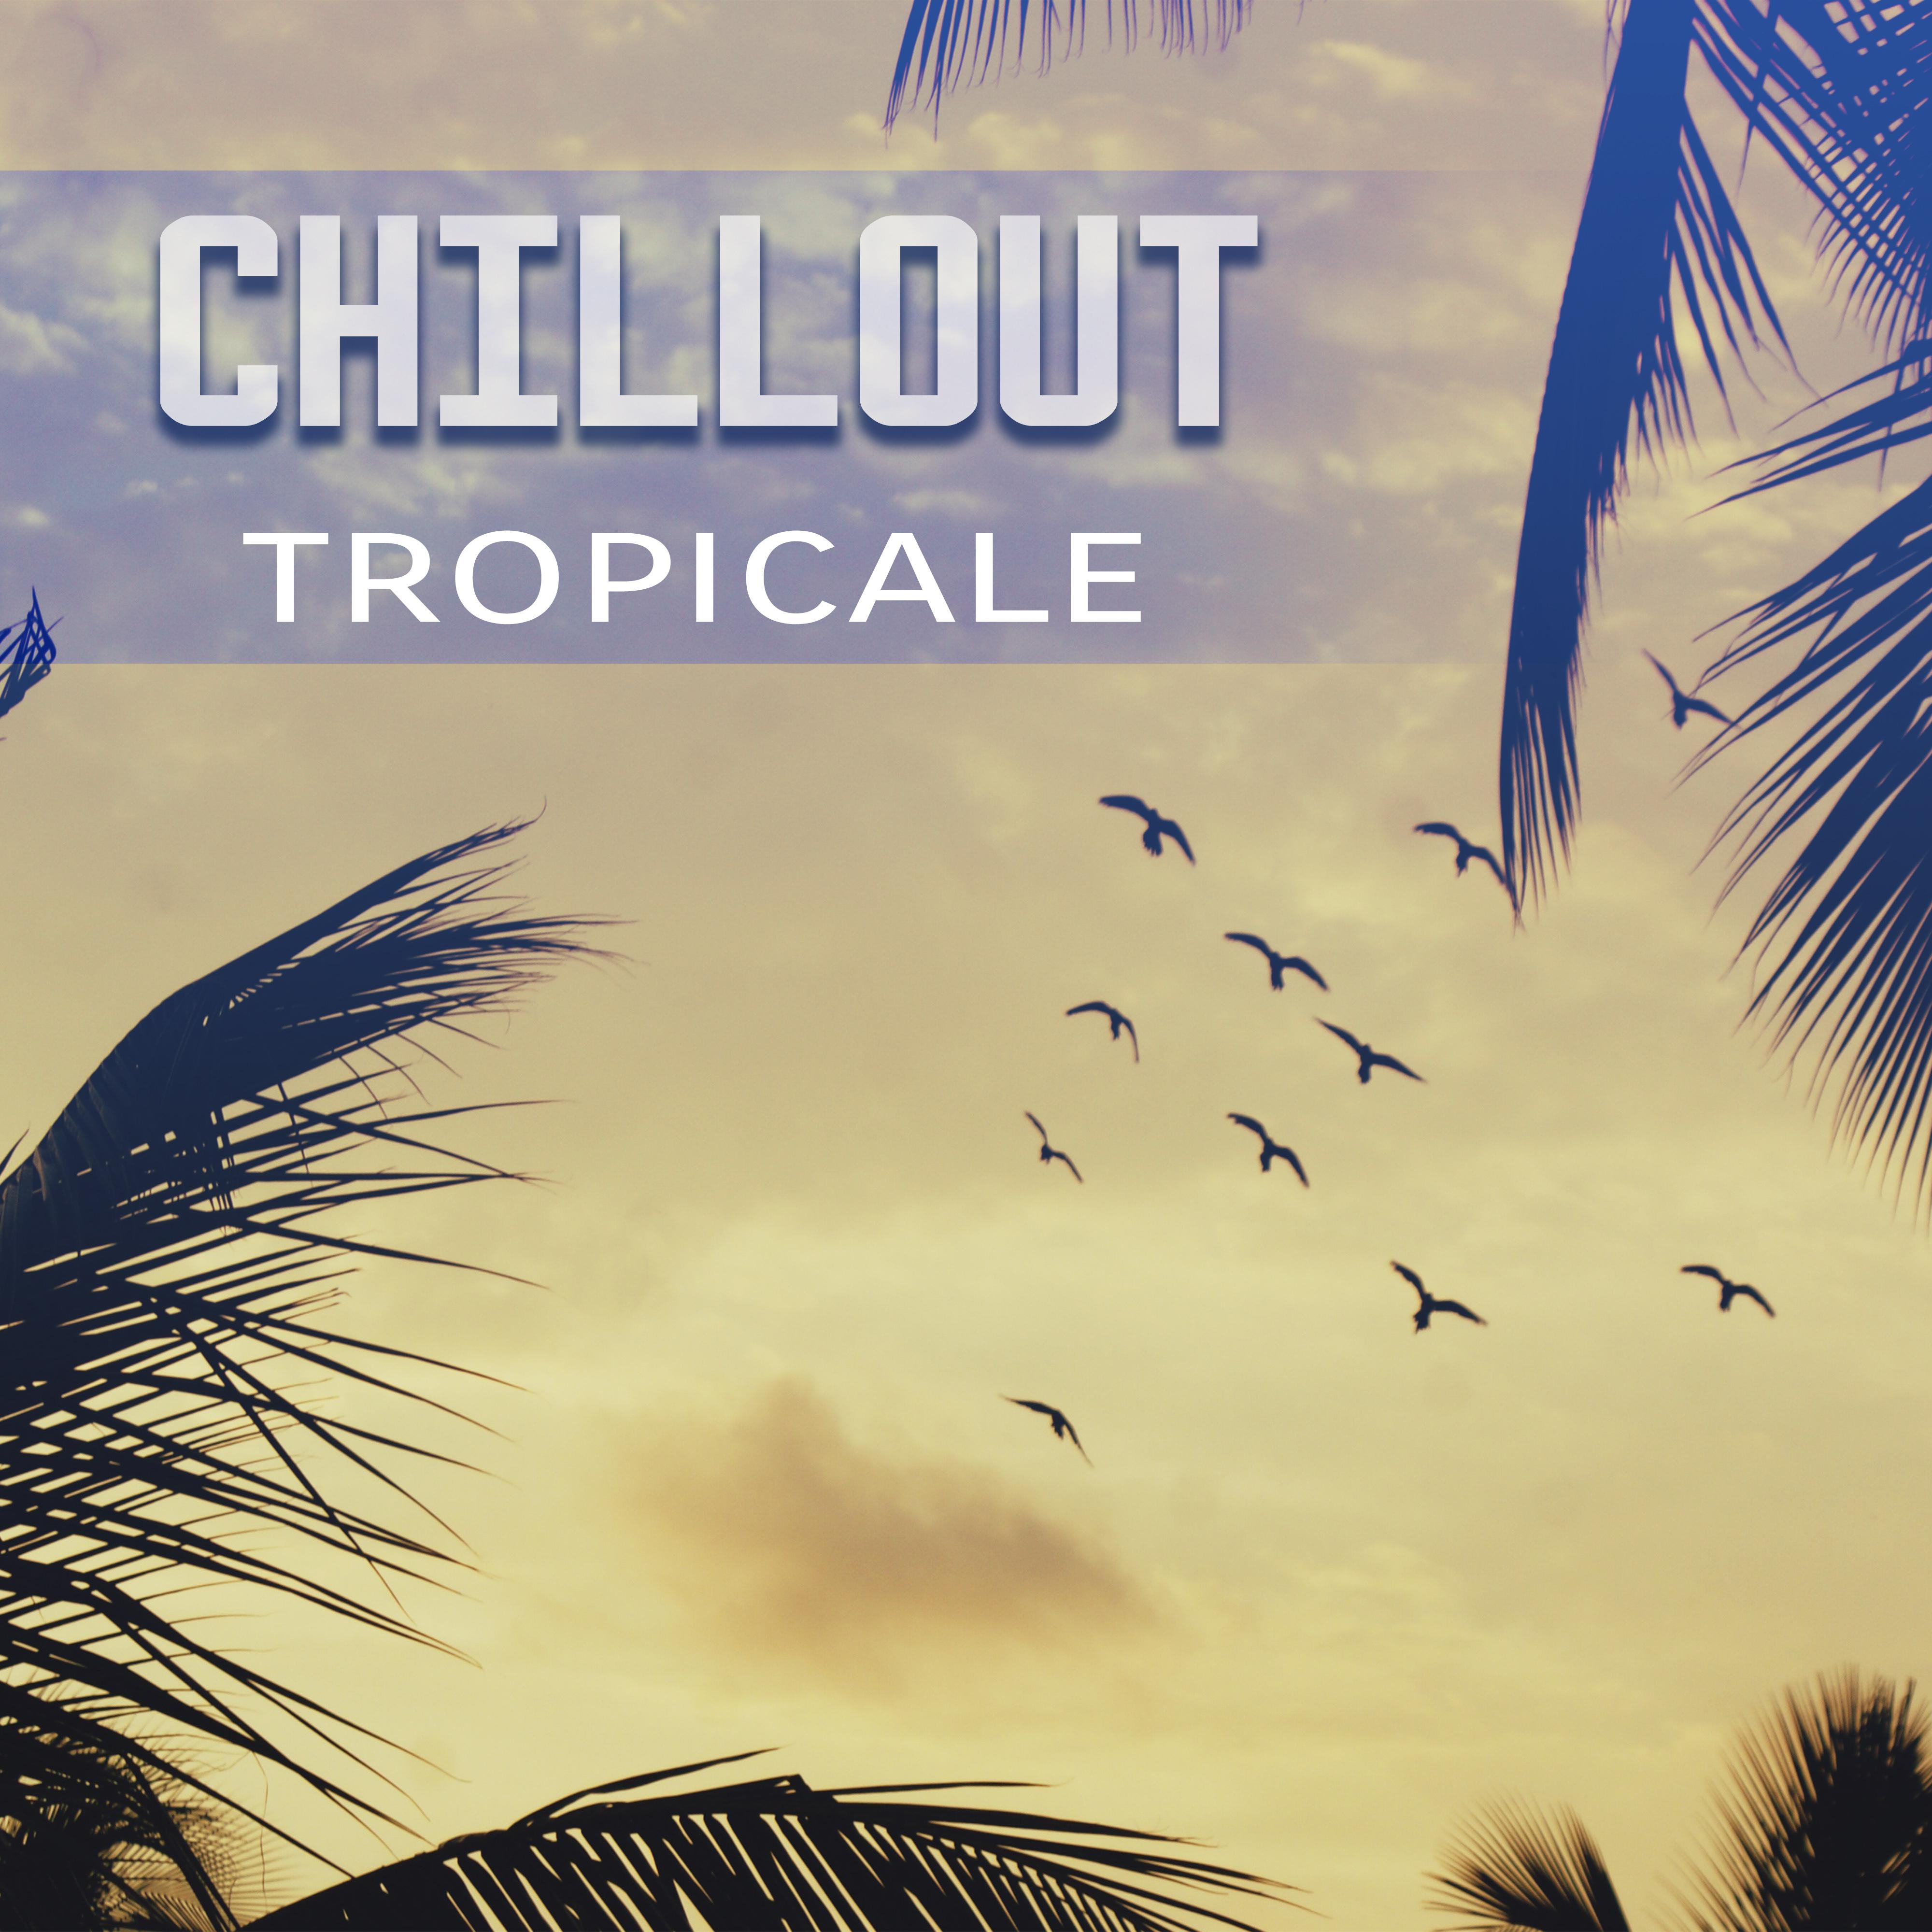 Chillout tropicale - Sole estivo, Mente calma, Musica per riposare, Acqua refrigerata